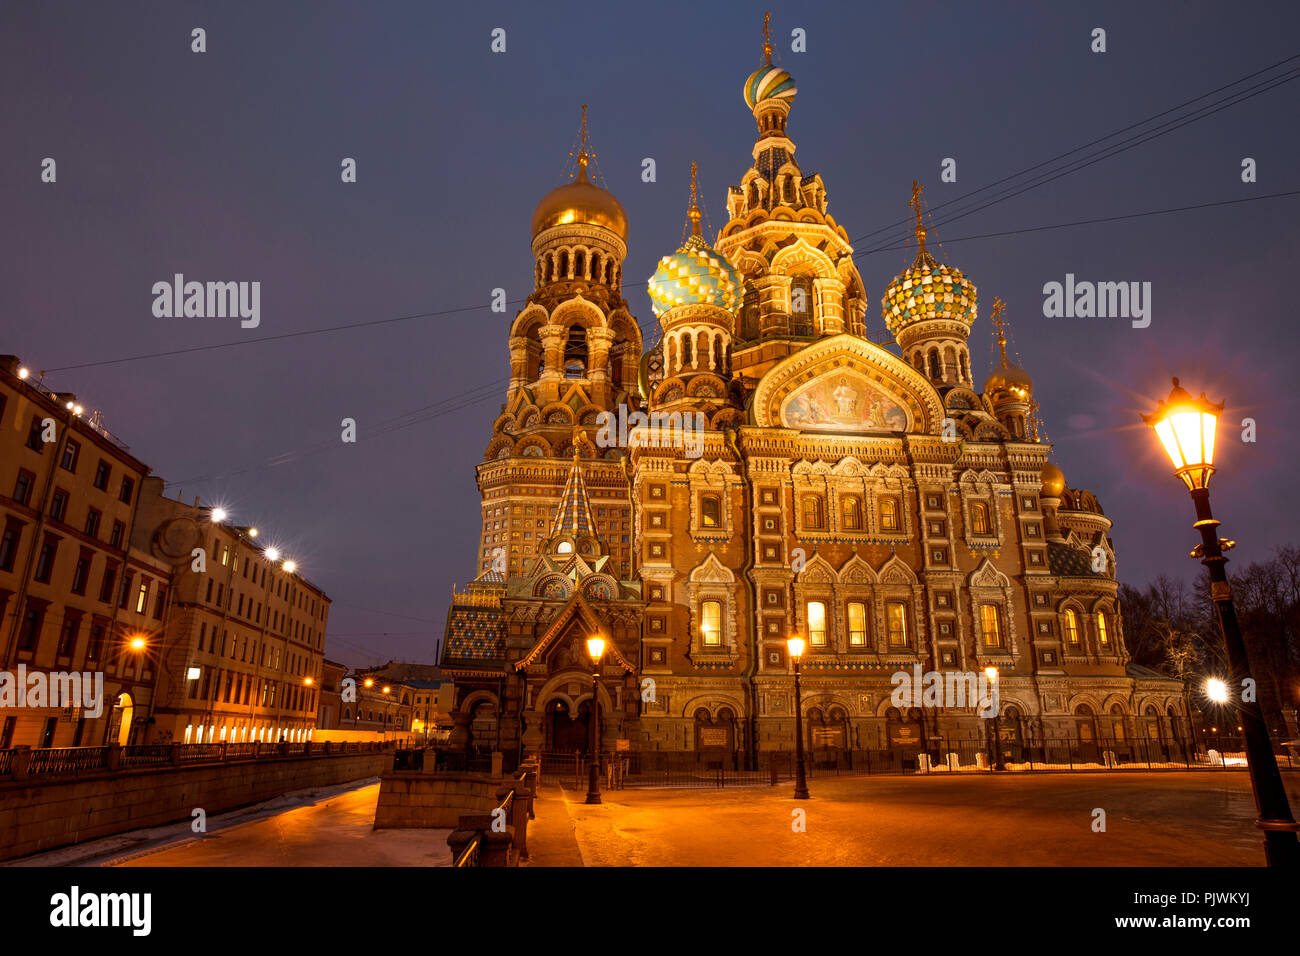 La Chiesa del Salvatore sul Sangue versato a San Pietroburgo, Russia Foto Stock